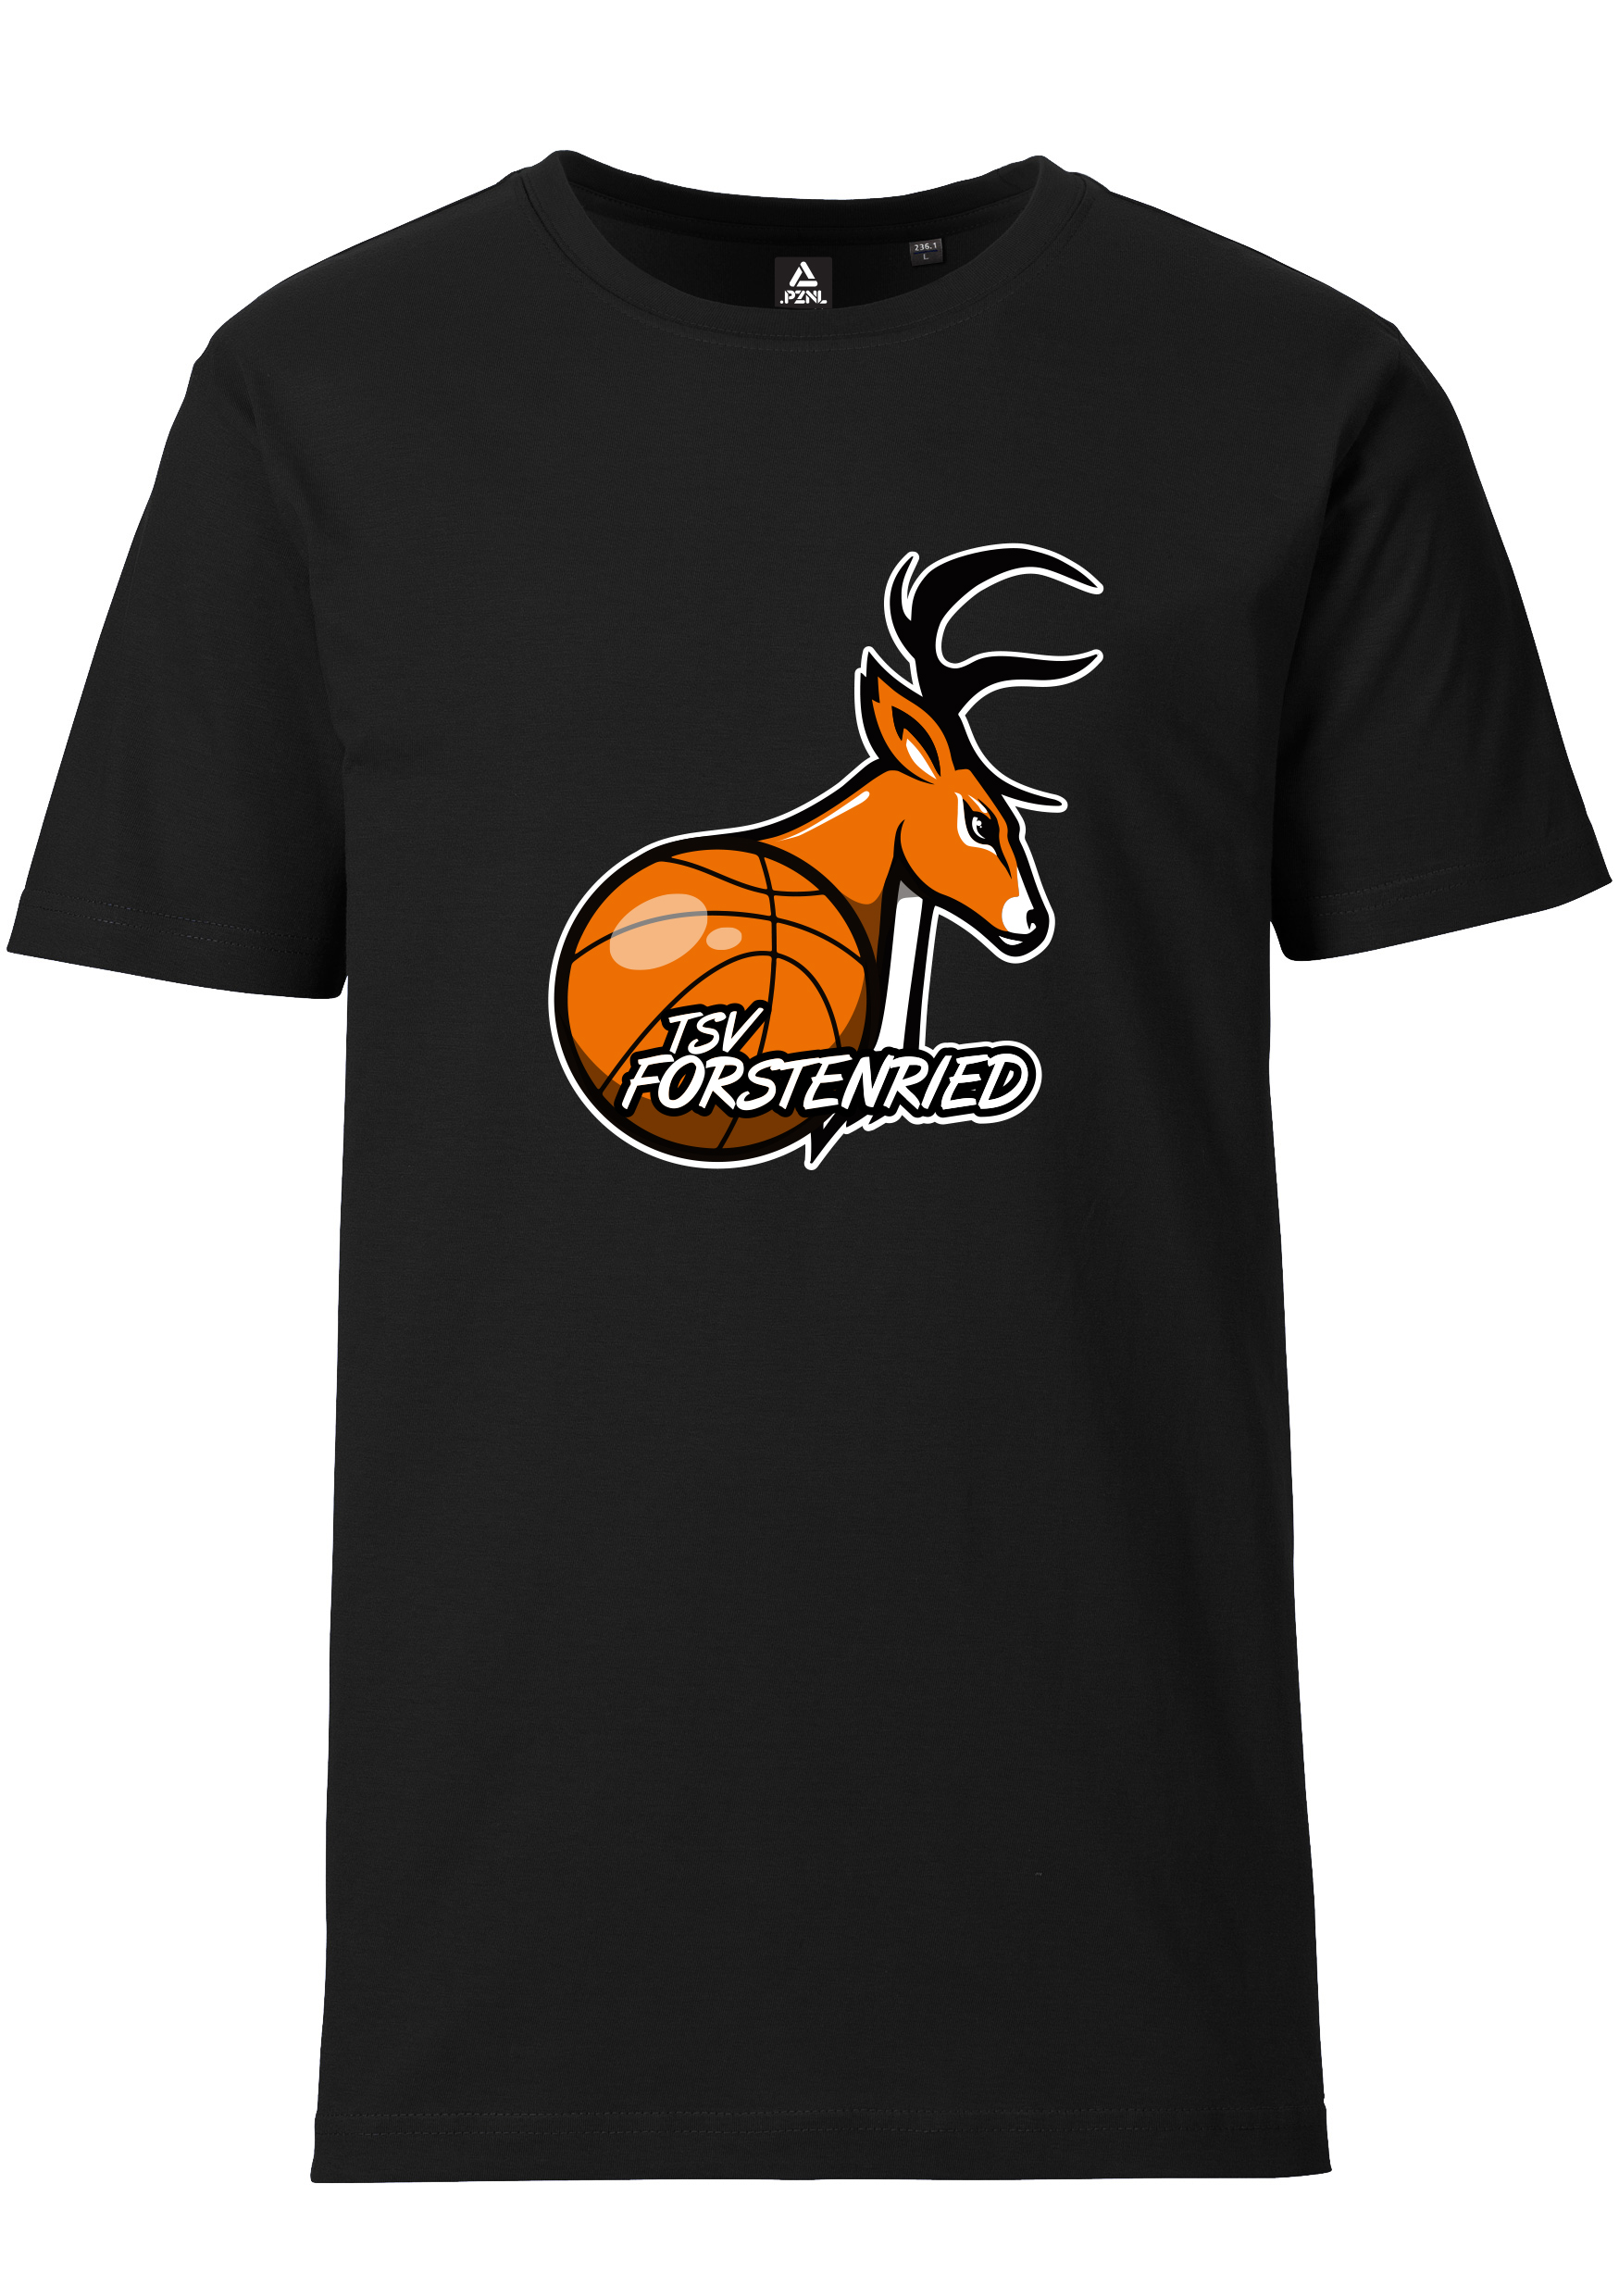 Forstenried Baskets T-Shirt Herren großes Logo